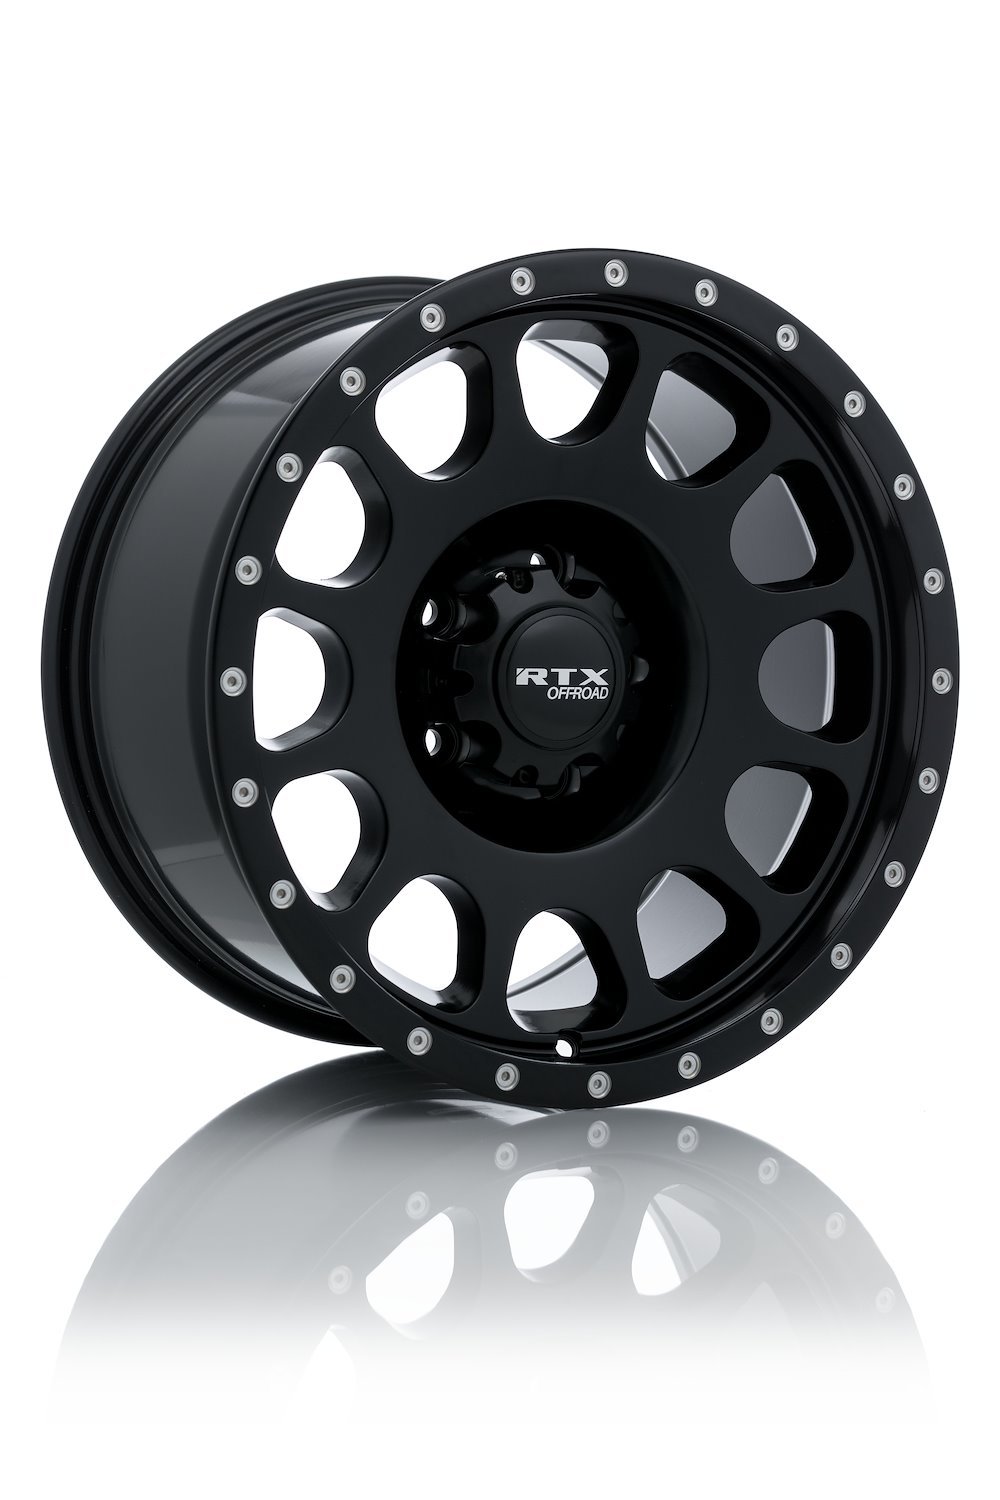 082686 Off-Road Series Baja Wheel [Size: 17" x 9"] Satin Black w/ Milled Rivets Finish